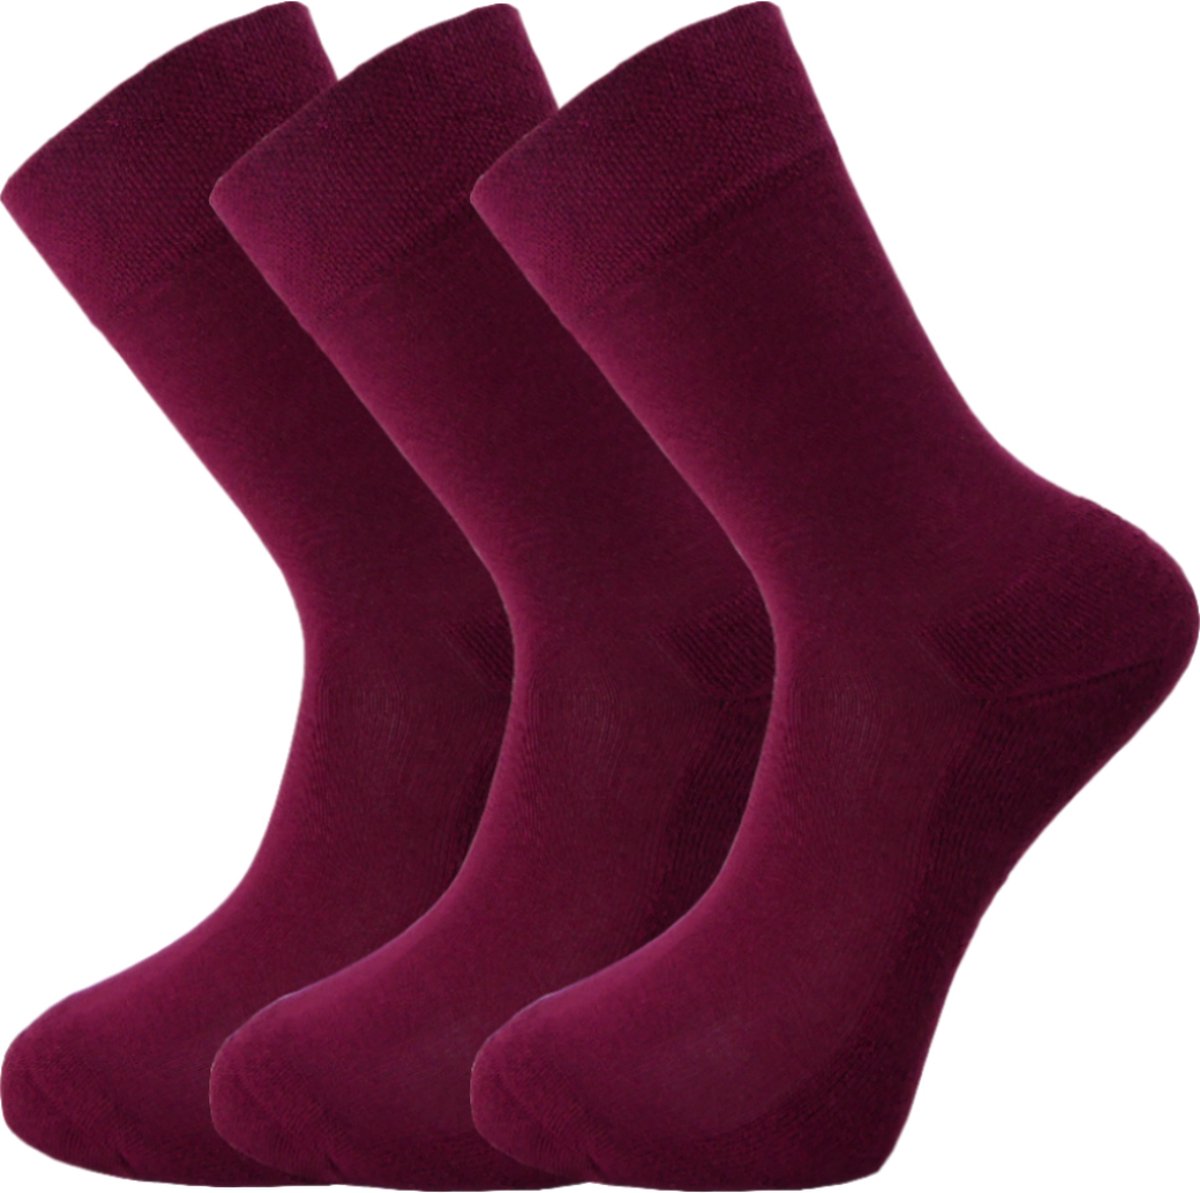 Bamboe sokken – Unisex – 3 paar – Bordeaux Rood – maat 38-39 – Extra dikke zool – Zacht en antibacterieel